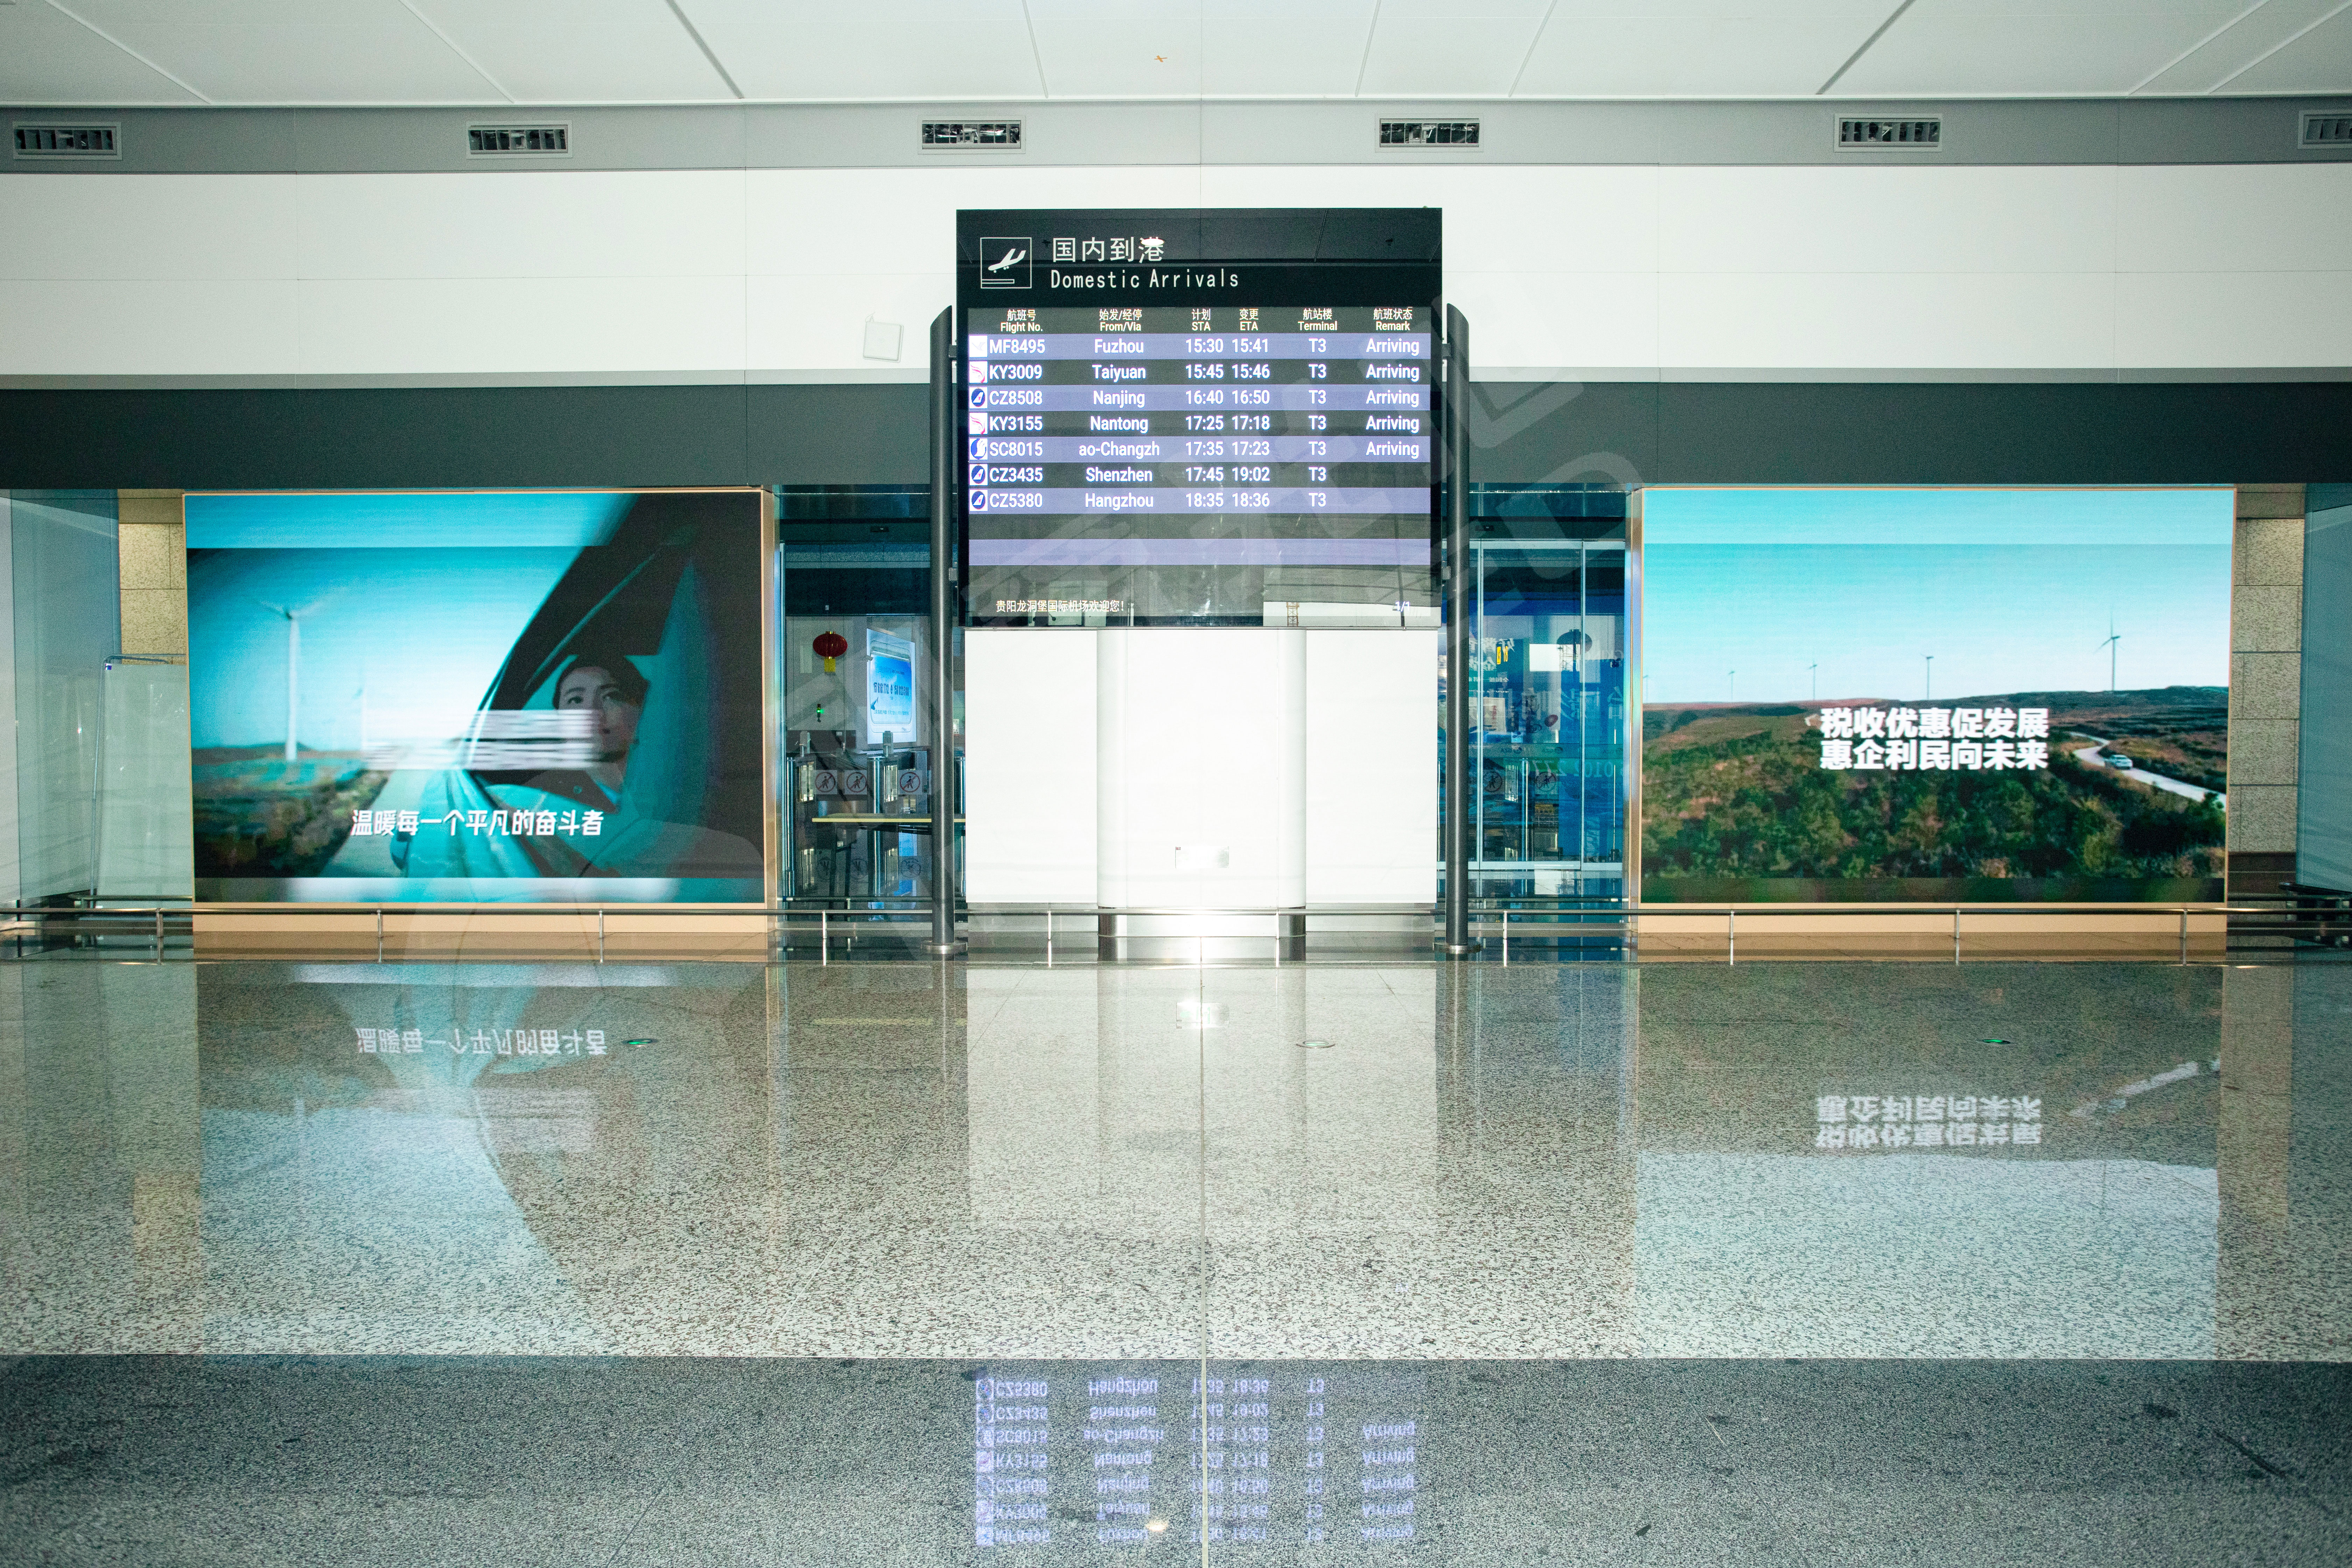 视爵光旭为贵州贵阳龙洞堡国际机场在机场到达口区域安装有2块双面LED屏